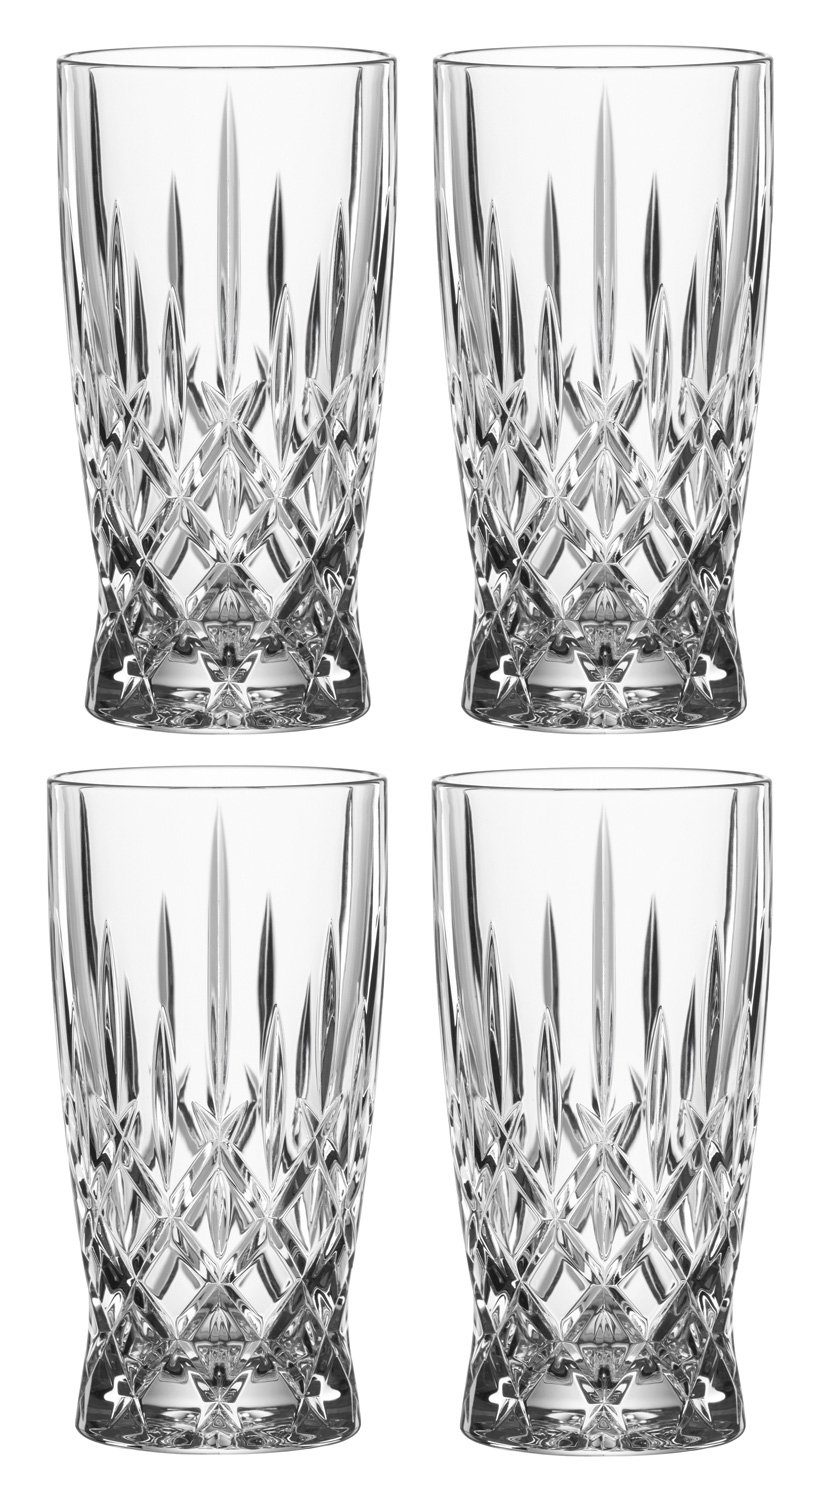 Nachtmann Latte-Macchiato-Glas NOBLESSE, 9-teilig, Transparent, mit Schliff, Kristallglas, mit 4 Gläsern, 4 Trinkhalmen und 1 Reinigungsbürste